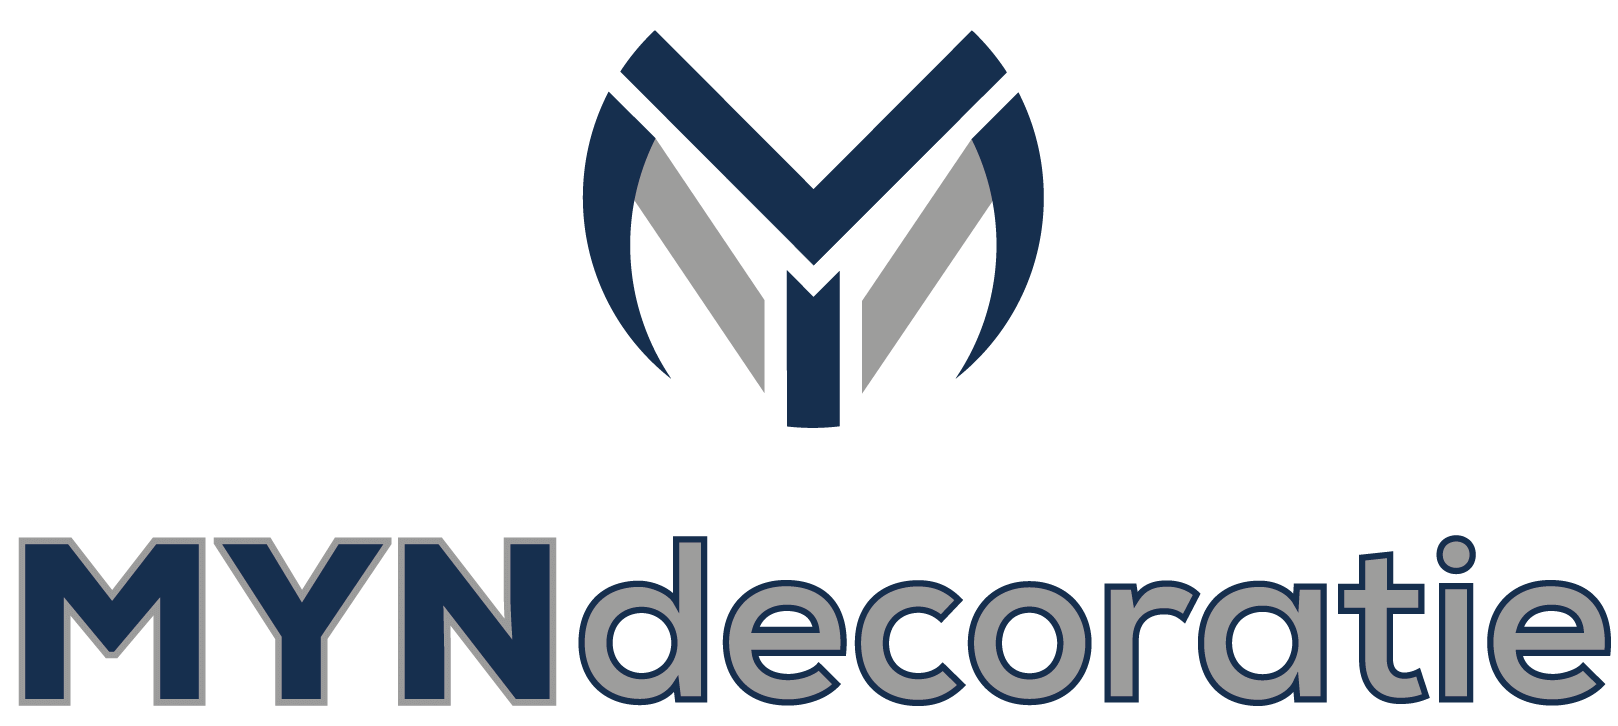 Logo Design Nisatutucu Myndecoratie